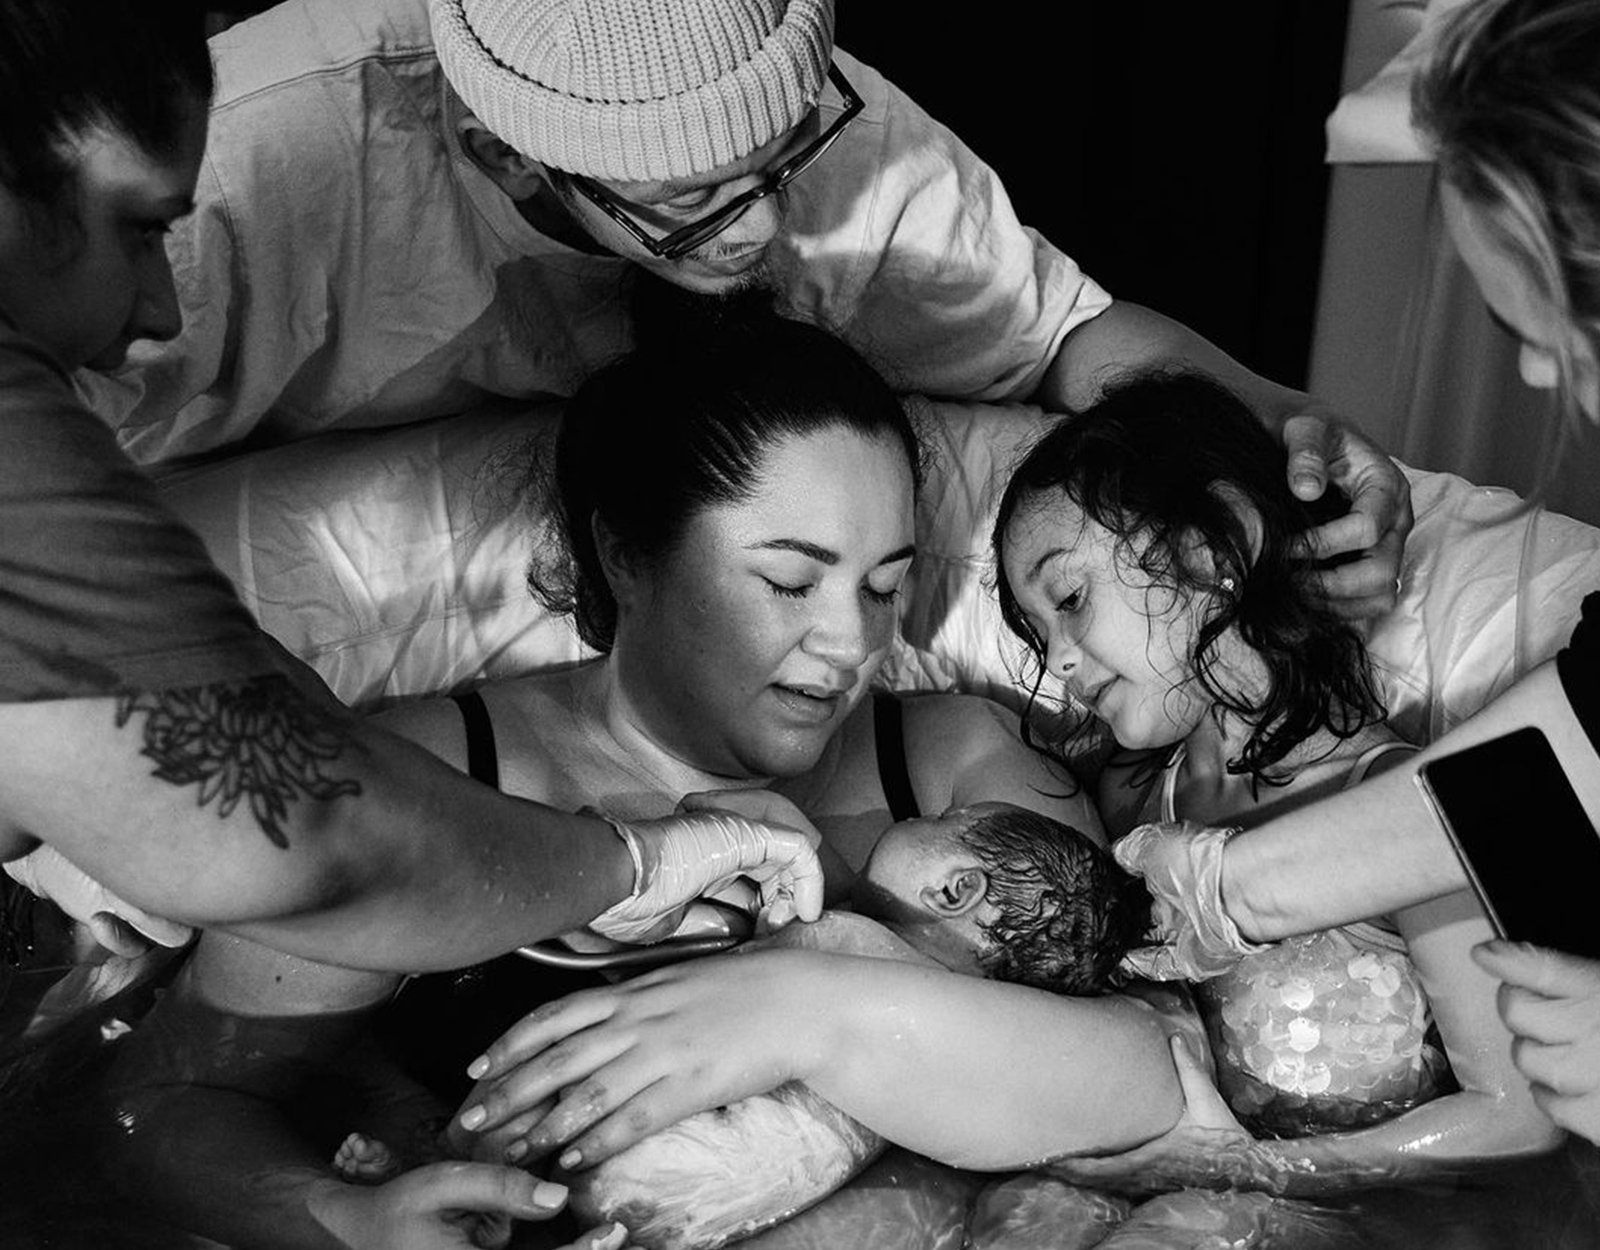 Alyanna Martinez giving birth to her daughter Aryanna Rumi via water birth